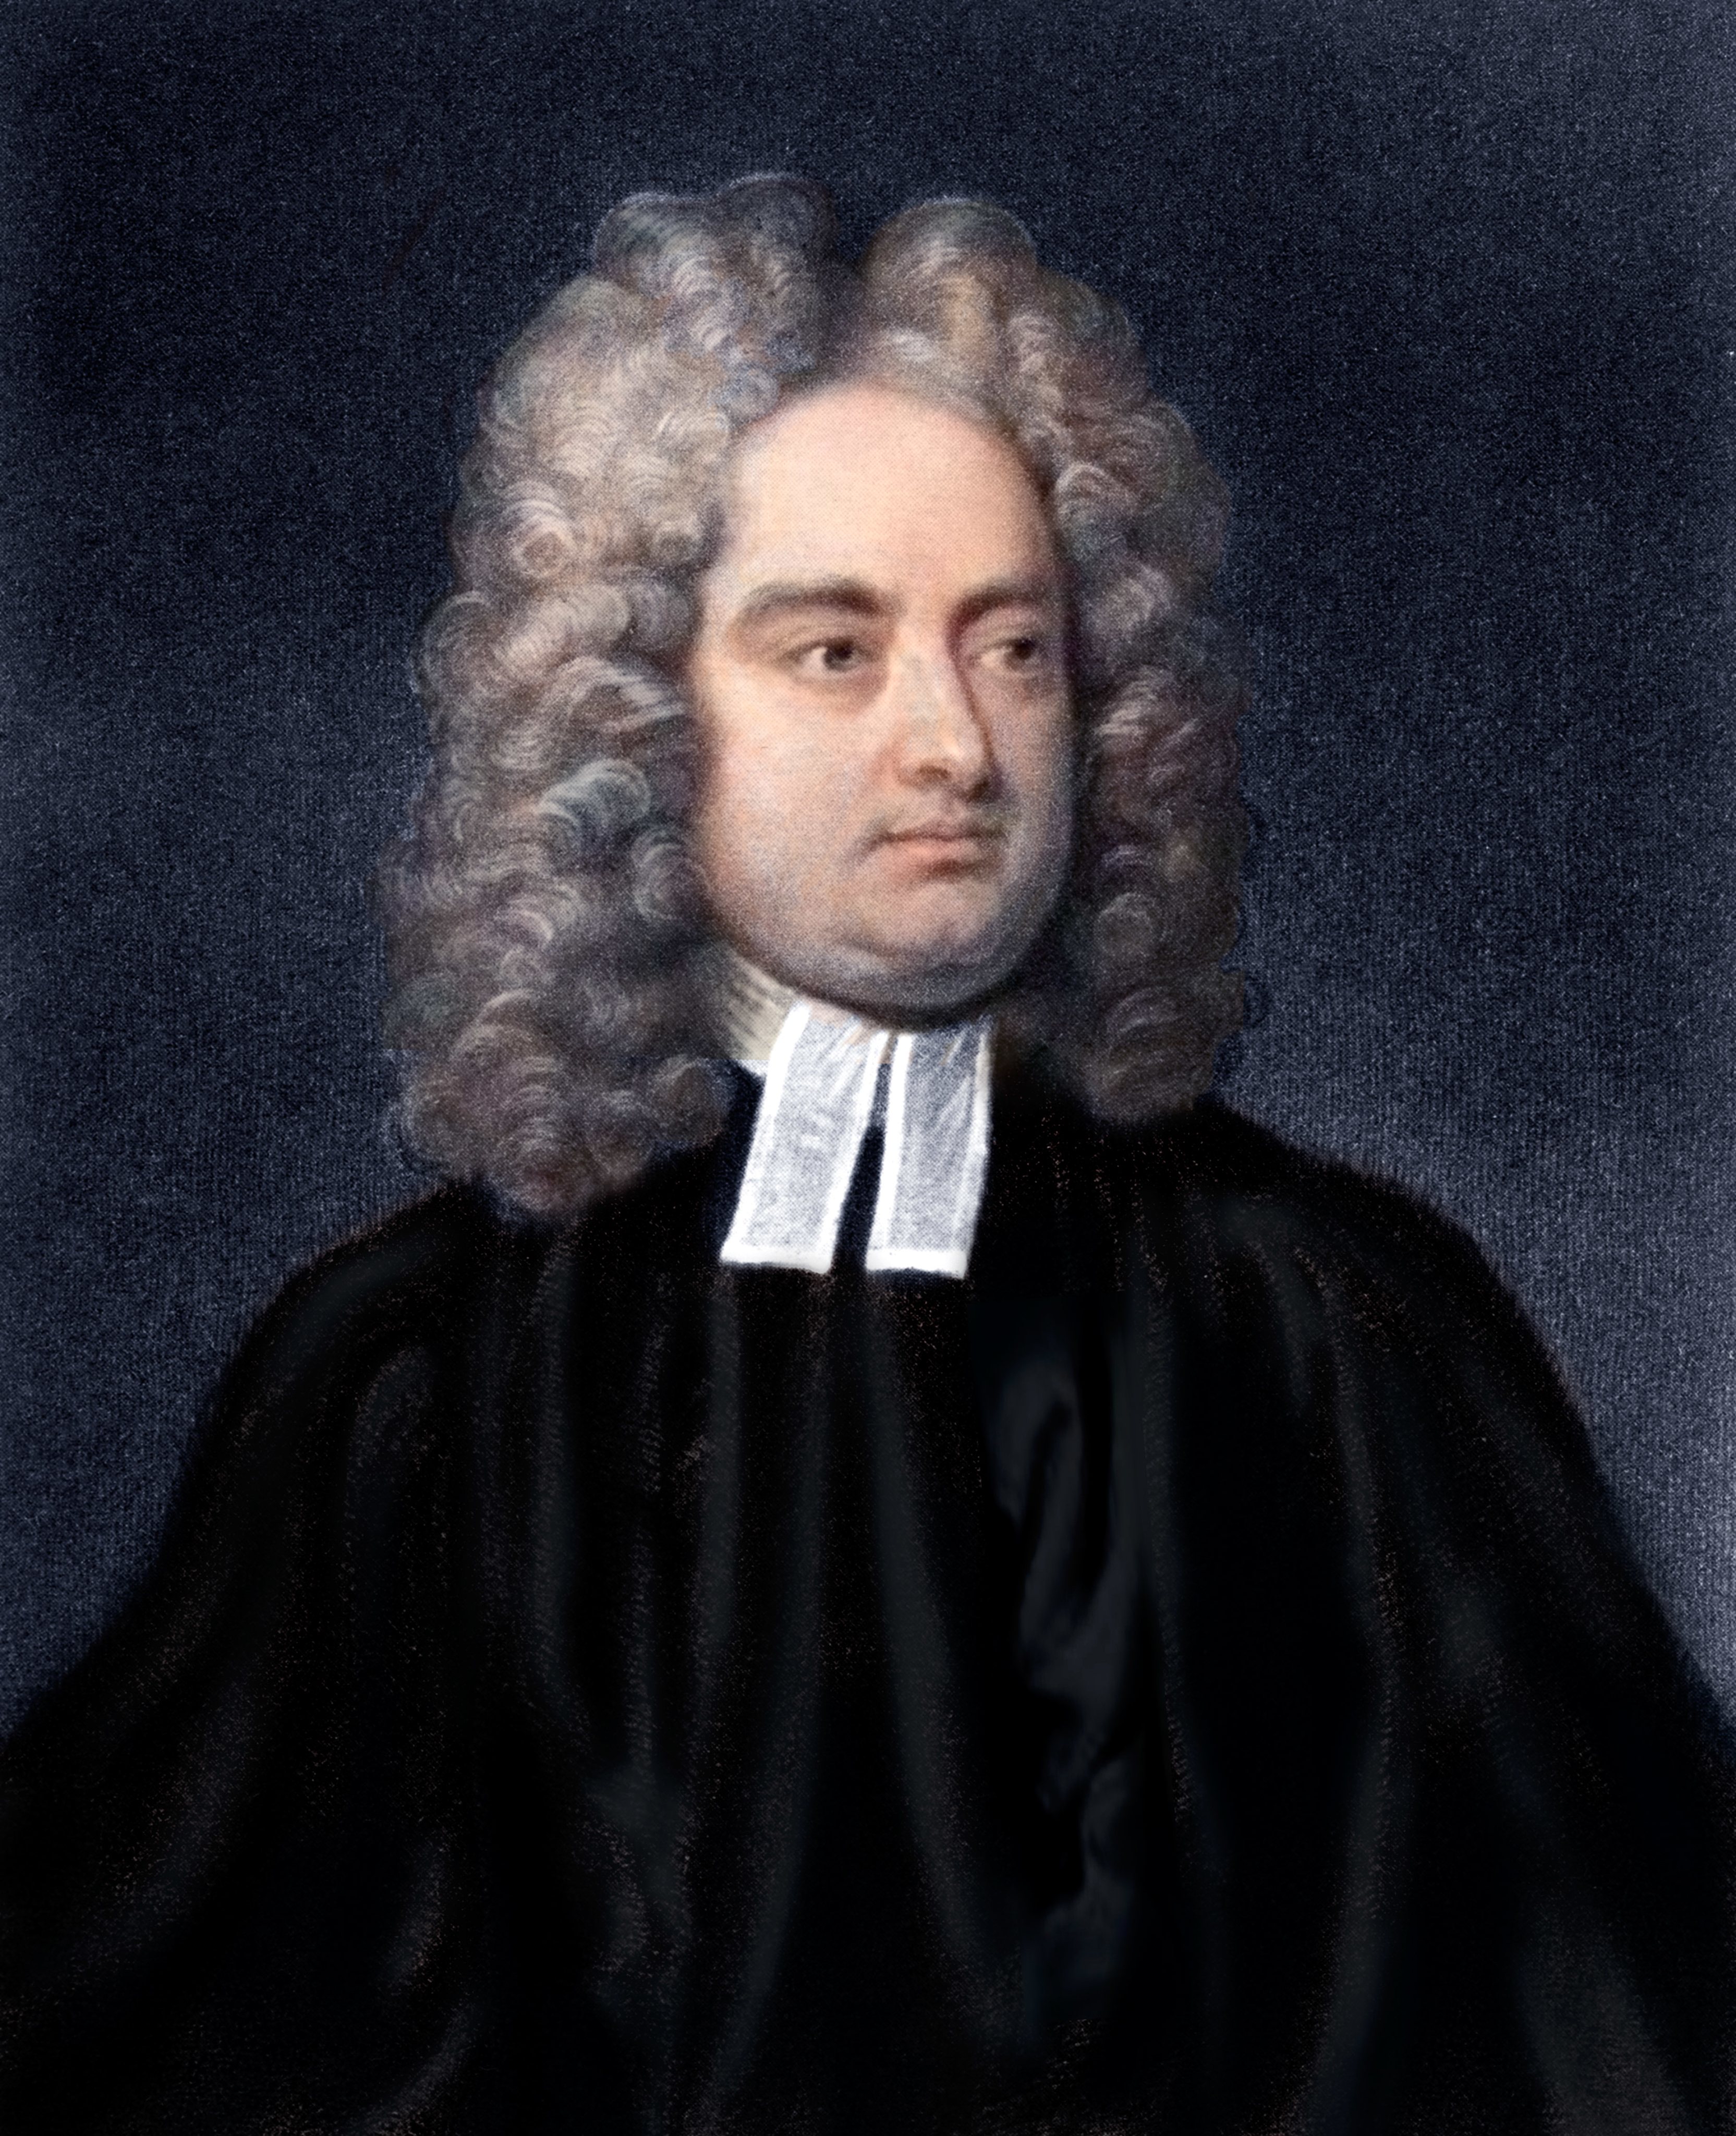 Jonathan Swift - Anglo Irish clergyman